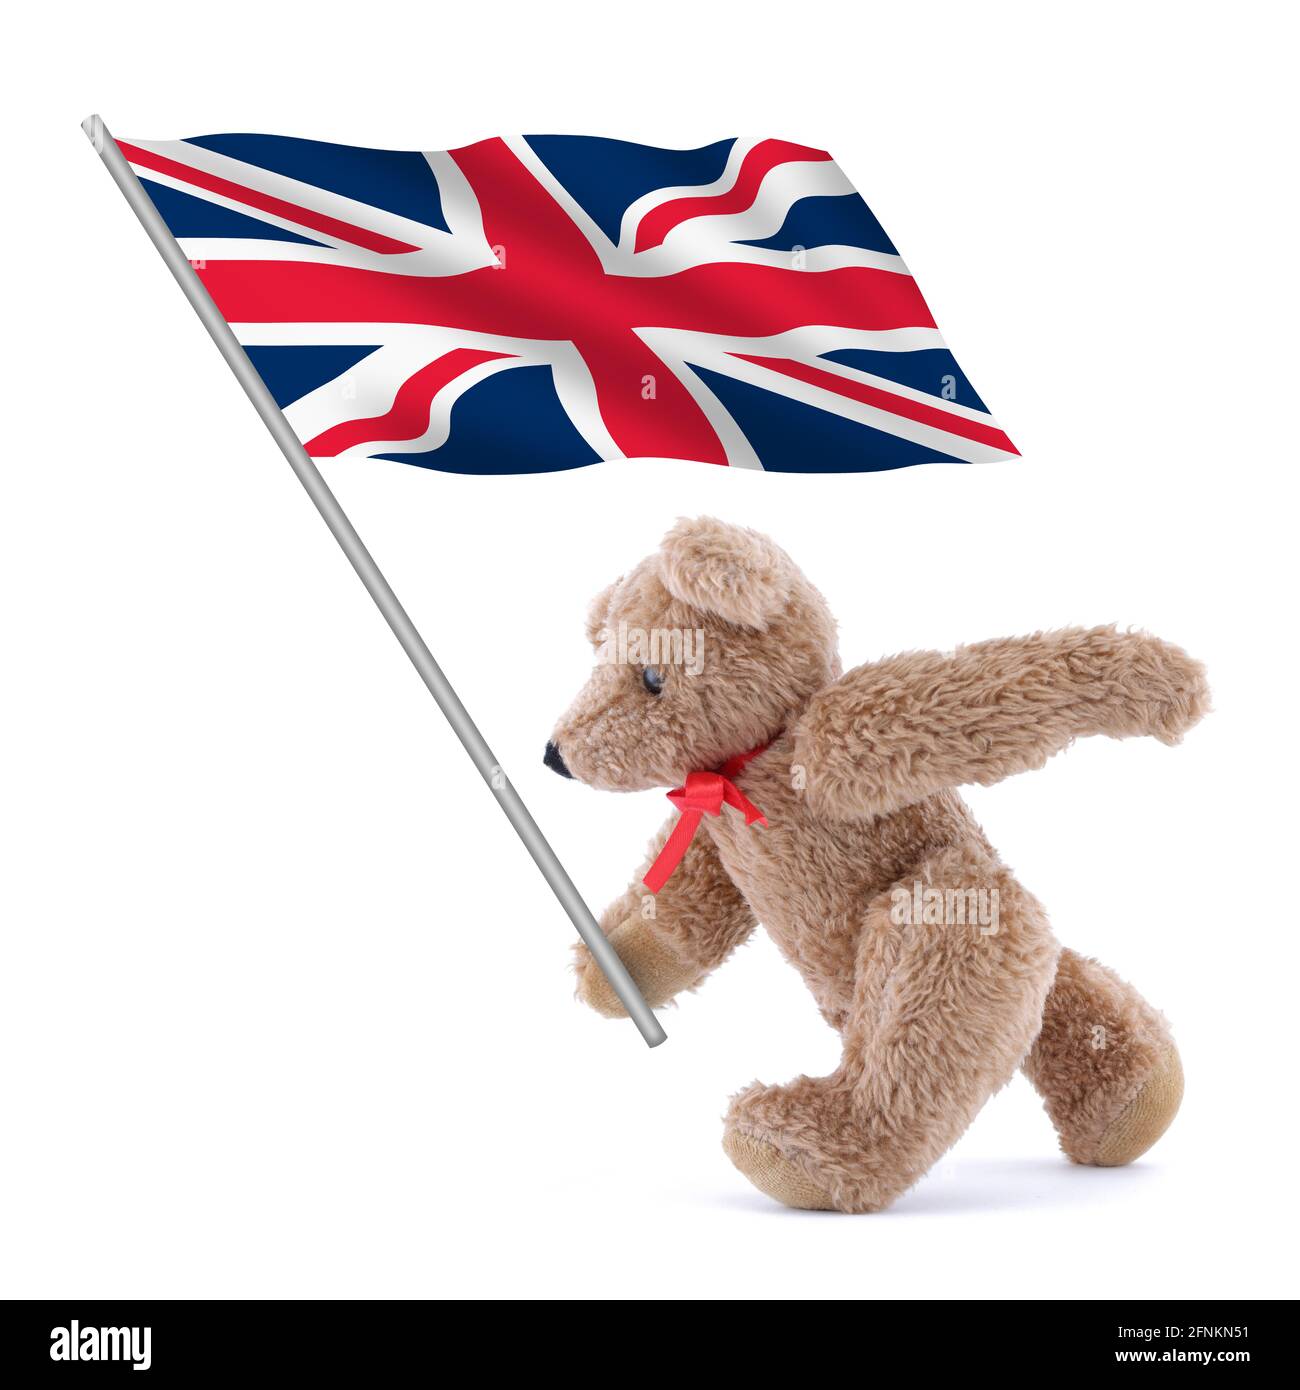 Royaume-Uni Grande-Bretagne drapeau Union Jack étant porté par un adorable ours en peluche Banque D'Images